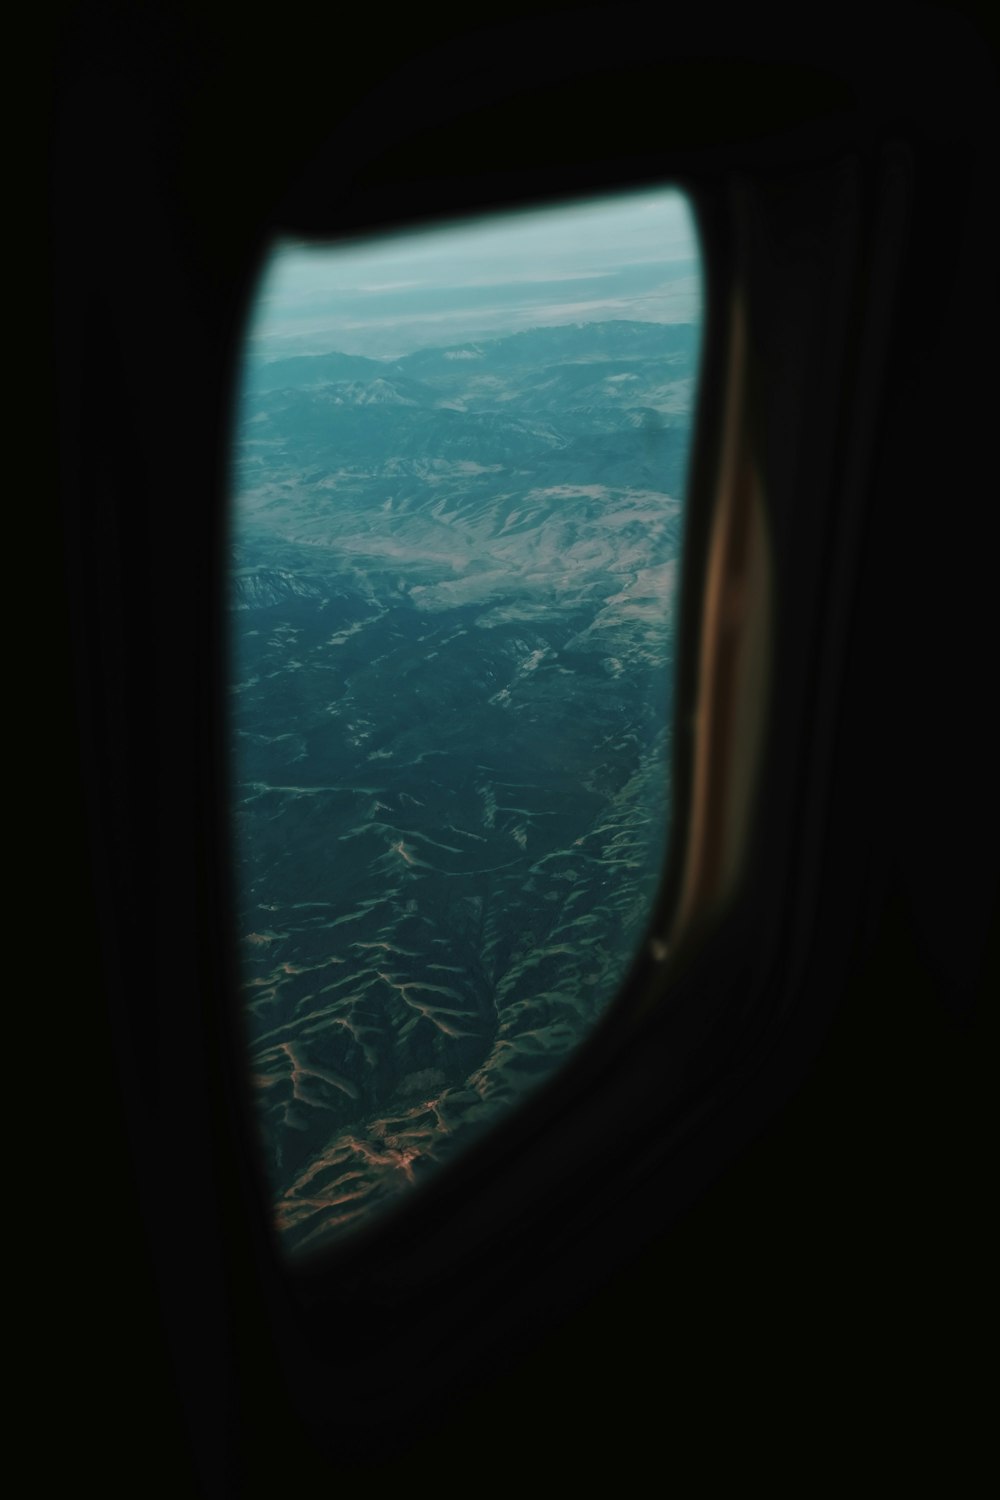 Vue aérienne de la montagne